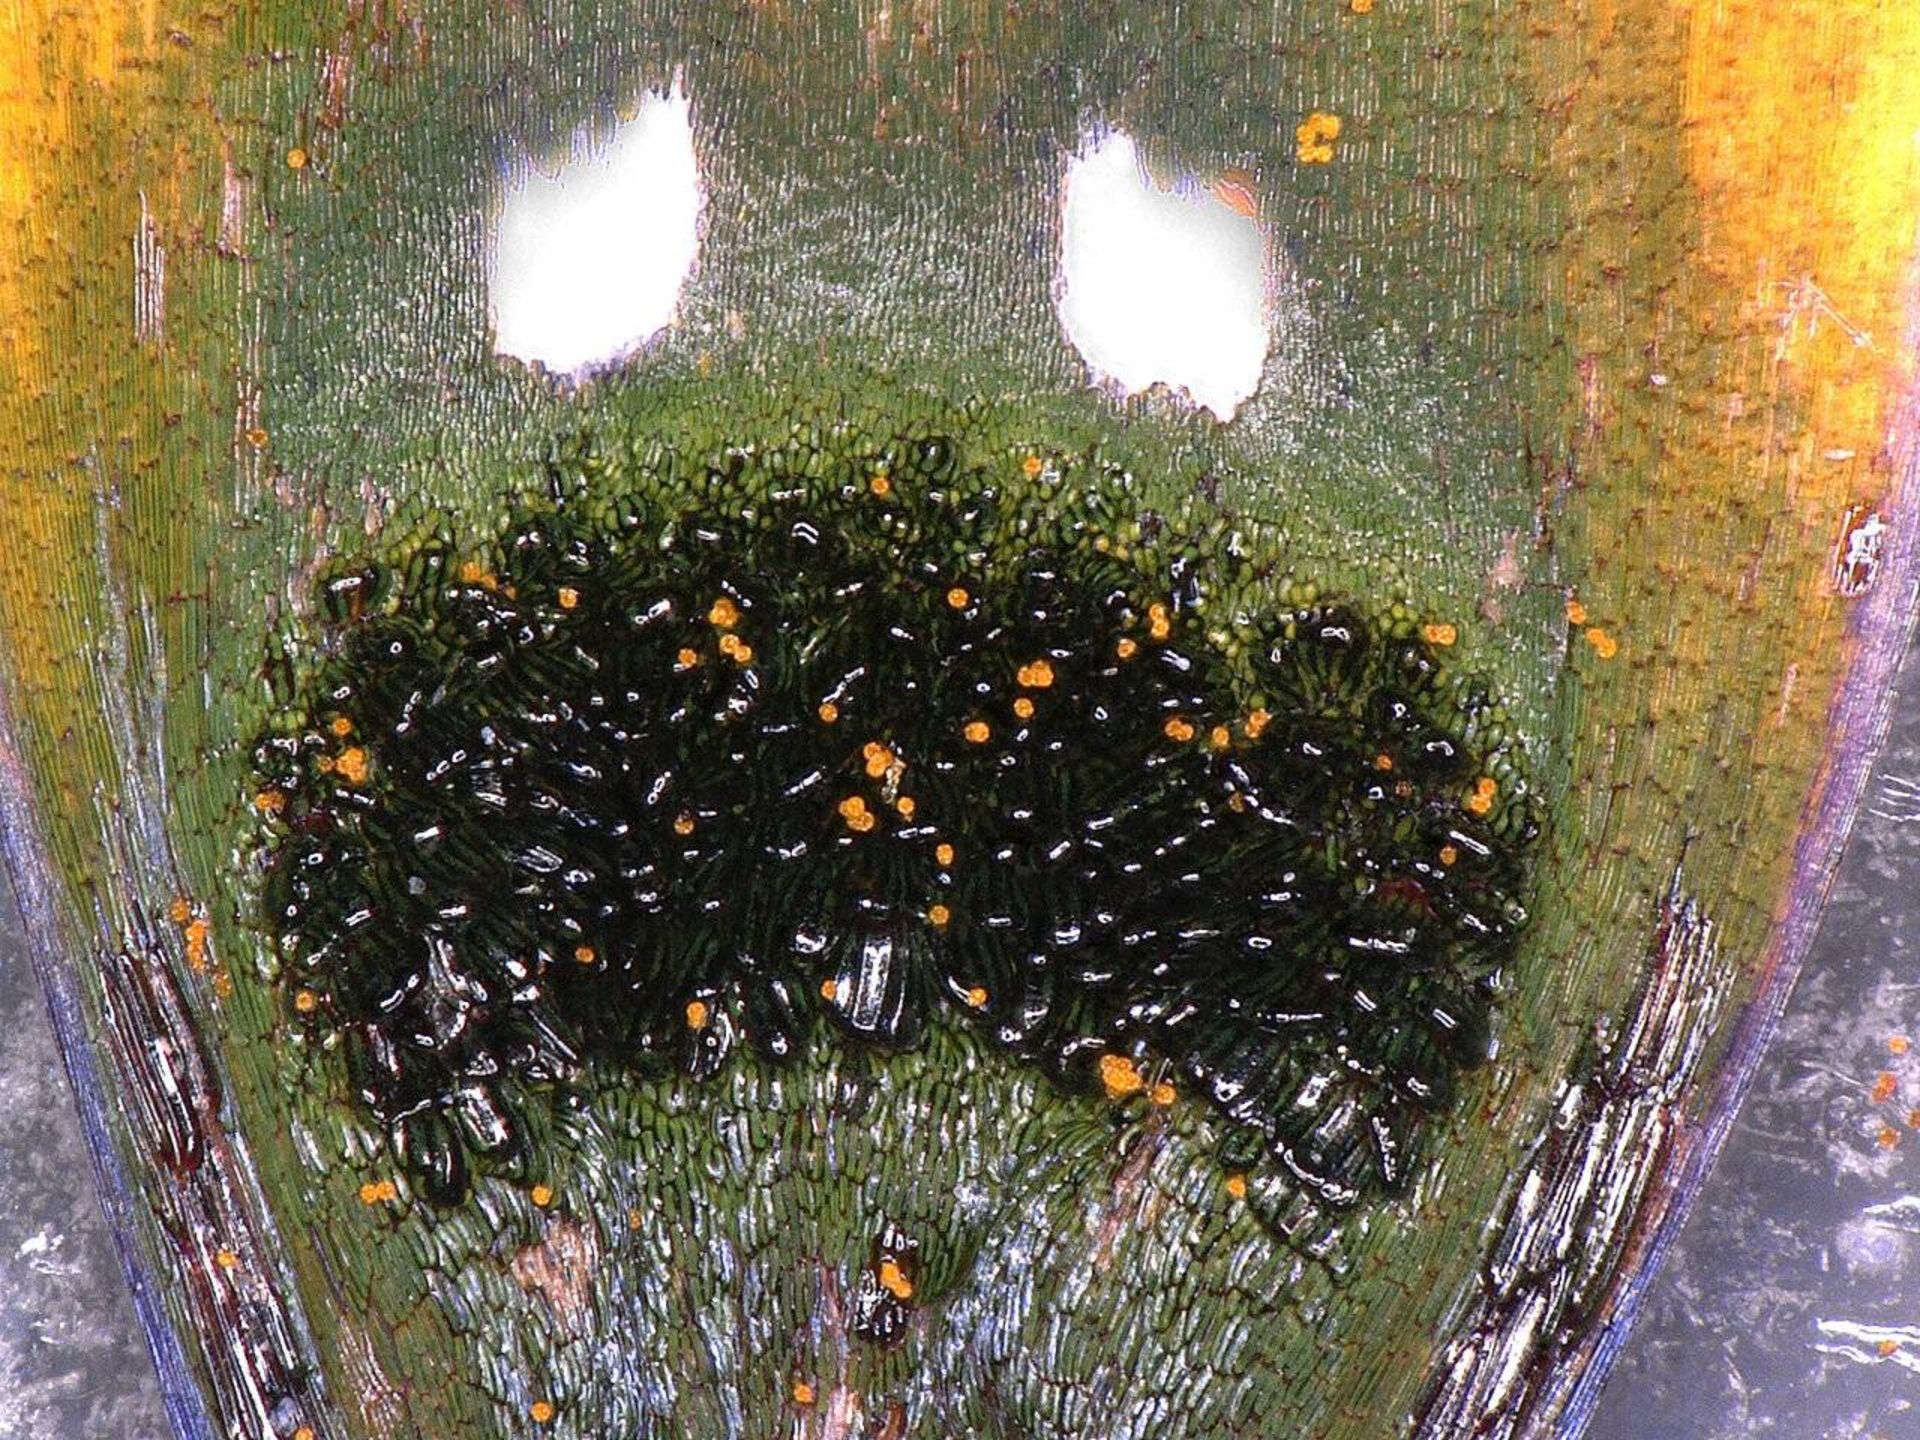 تصویر میکروسکوپی مگس دروغین گل